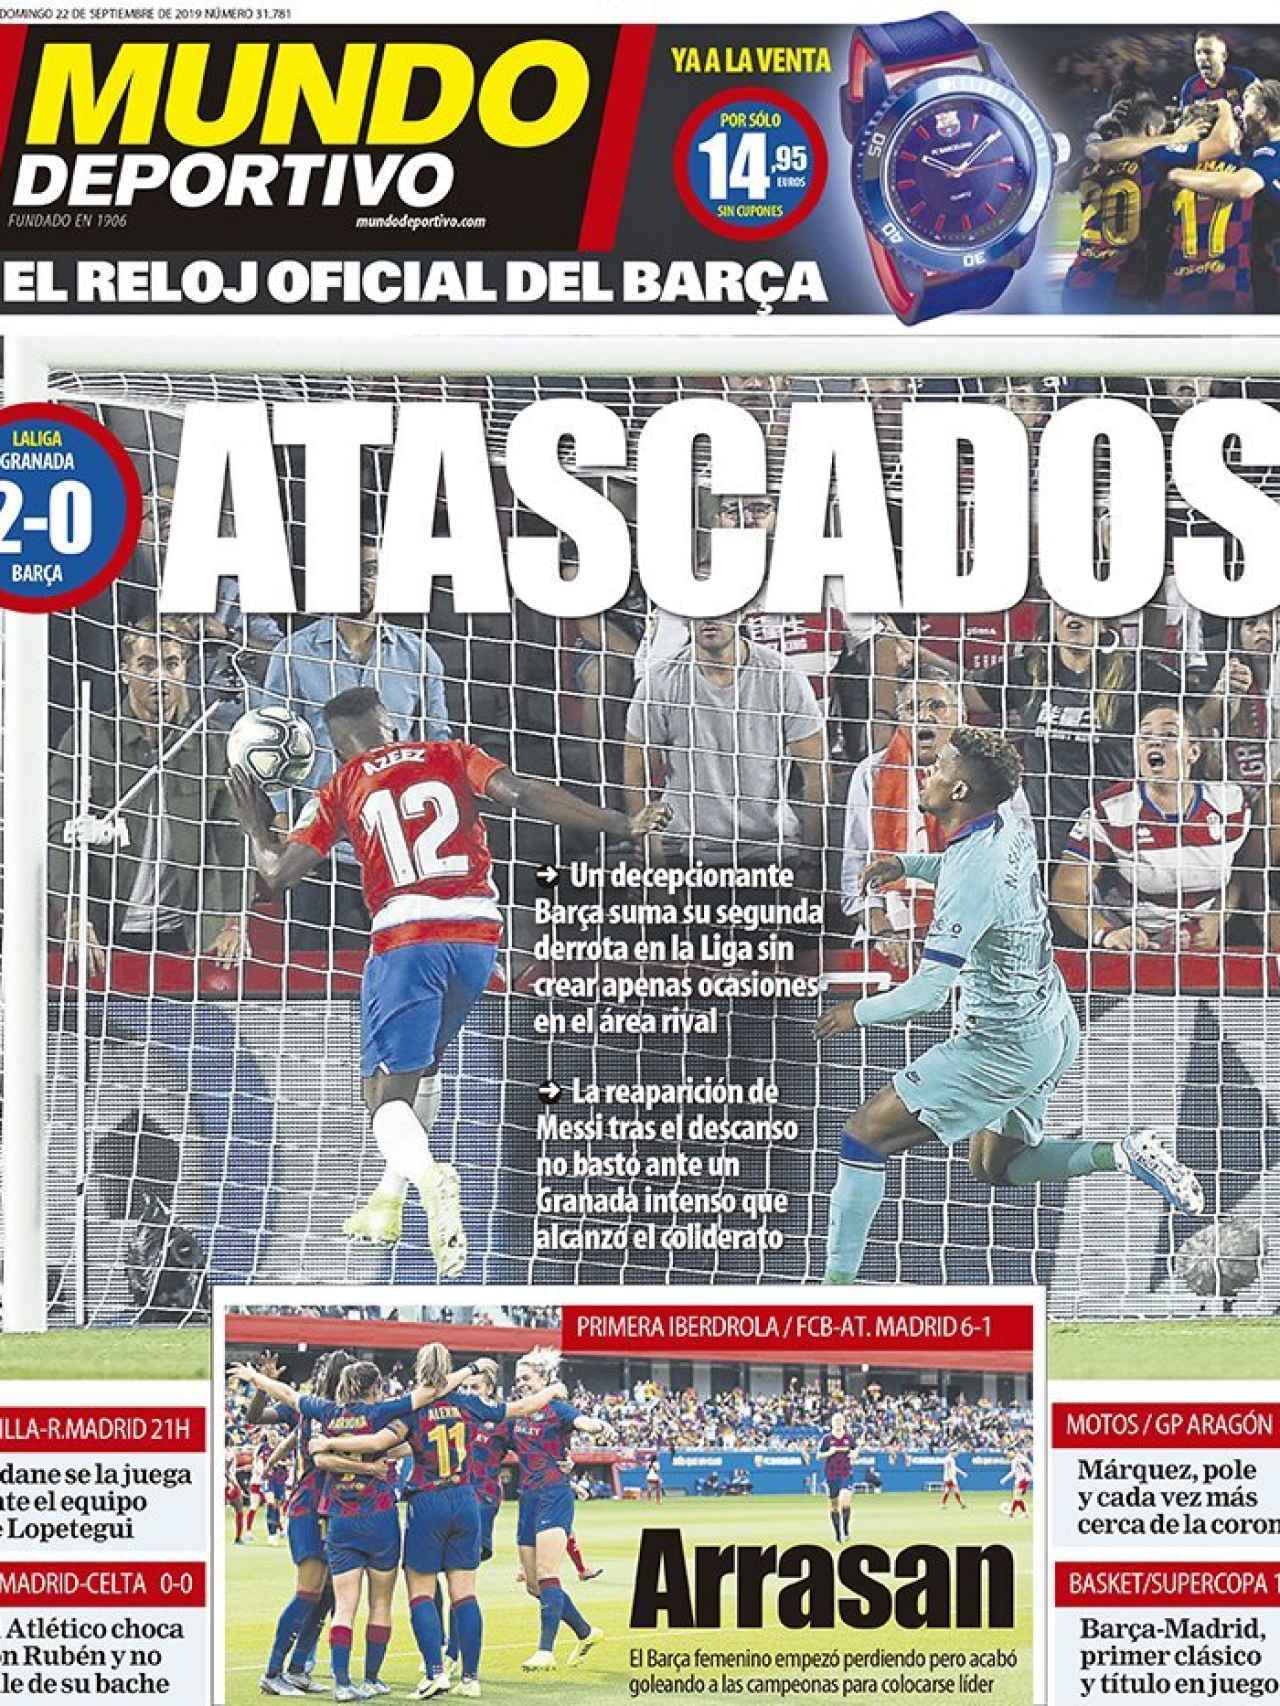 La portada del diario Mundo Deportivo (22/09/2019)